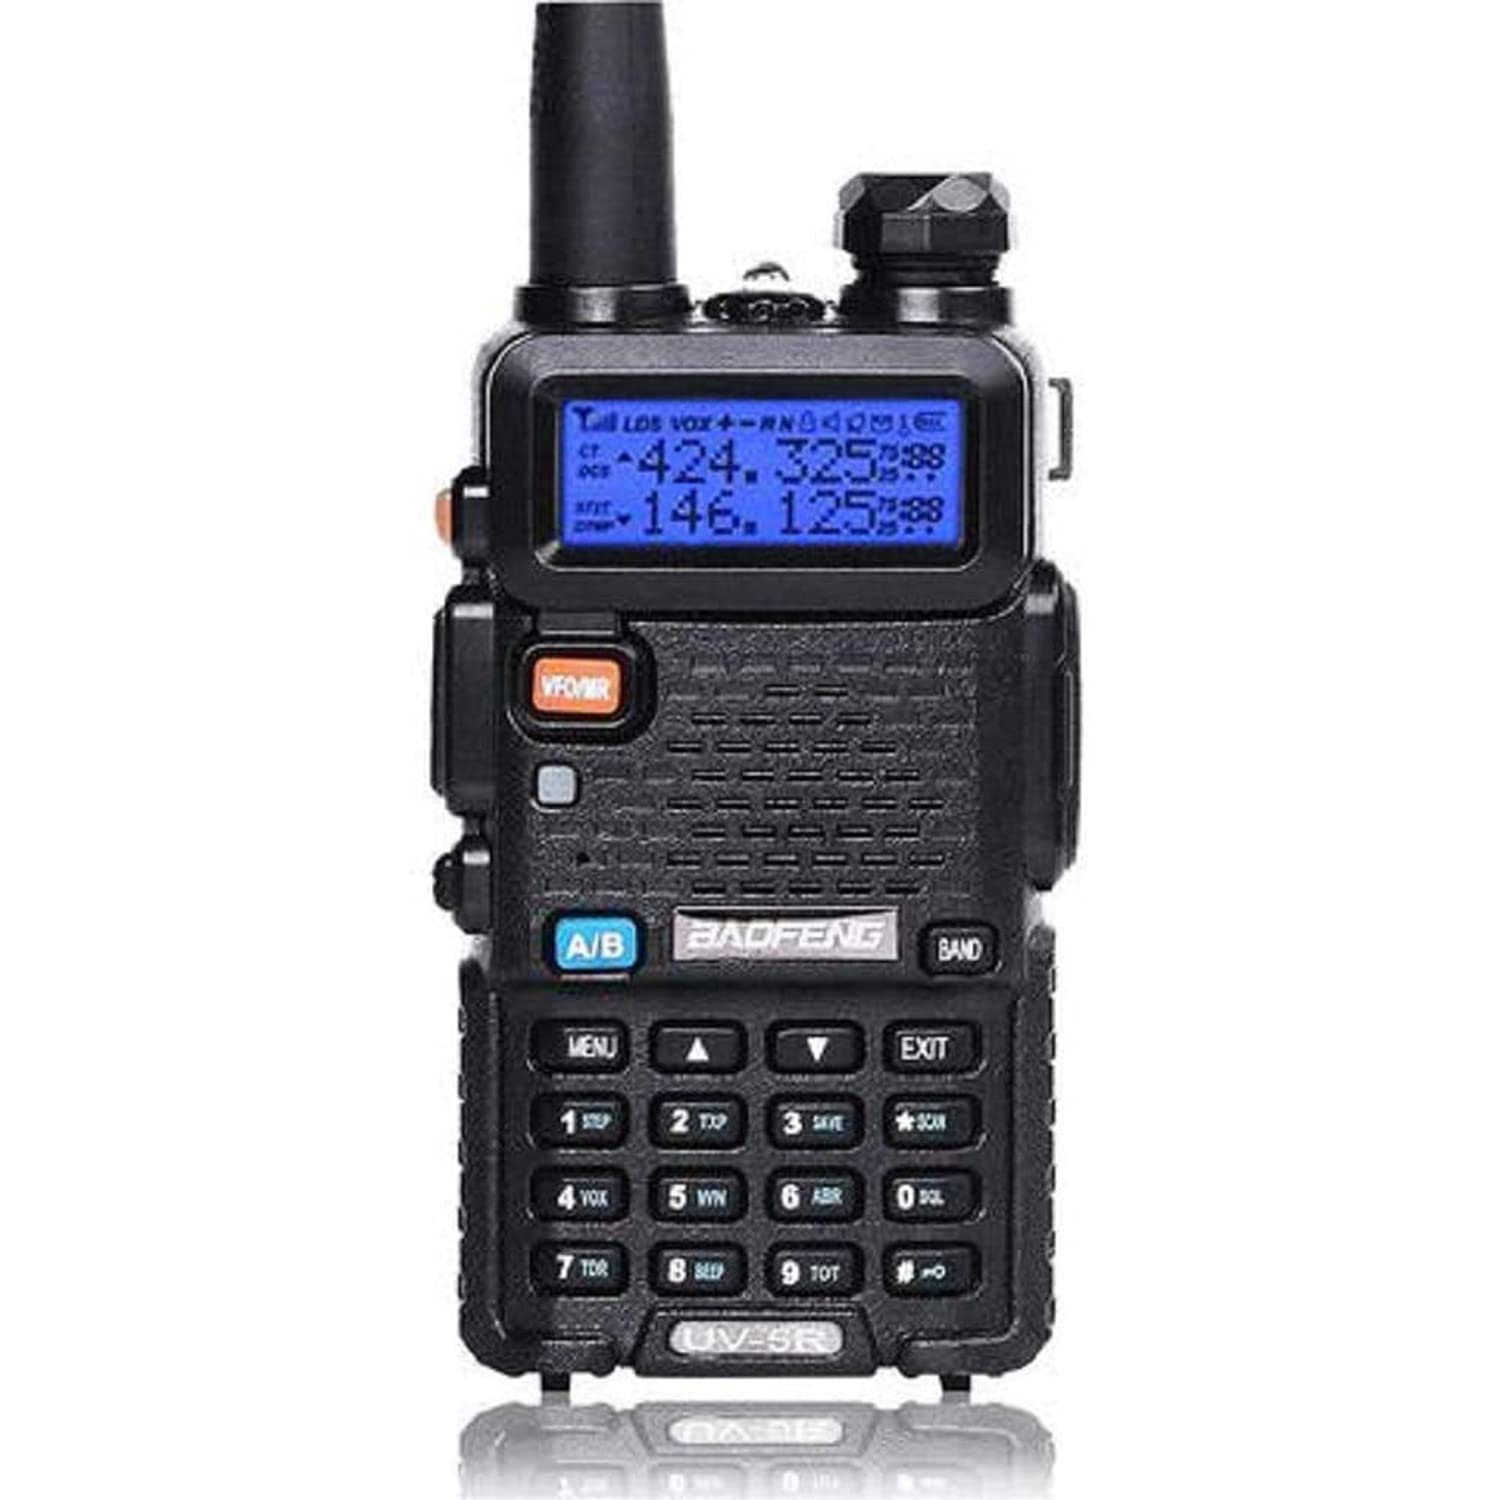 Baofeng UV-5R Two Way Radio Dual Band 144-148/420-450Mhz Walkie Talkie  1800mAh Li